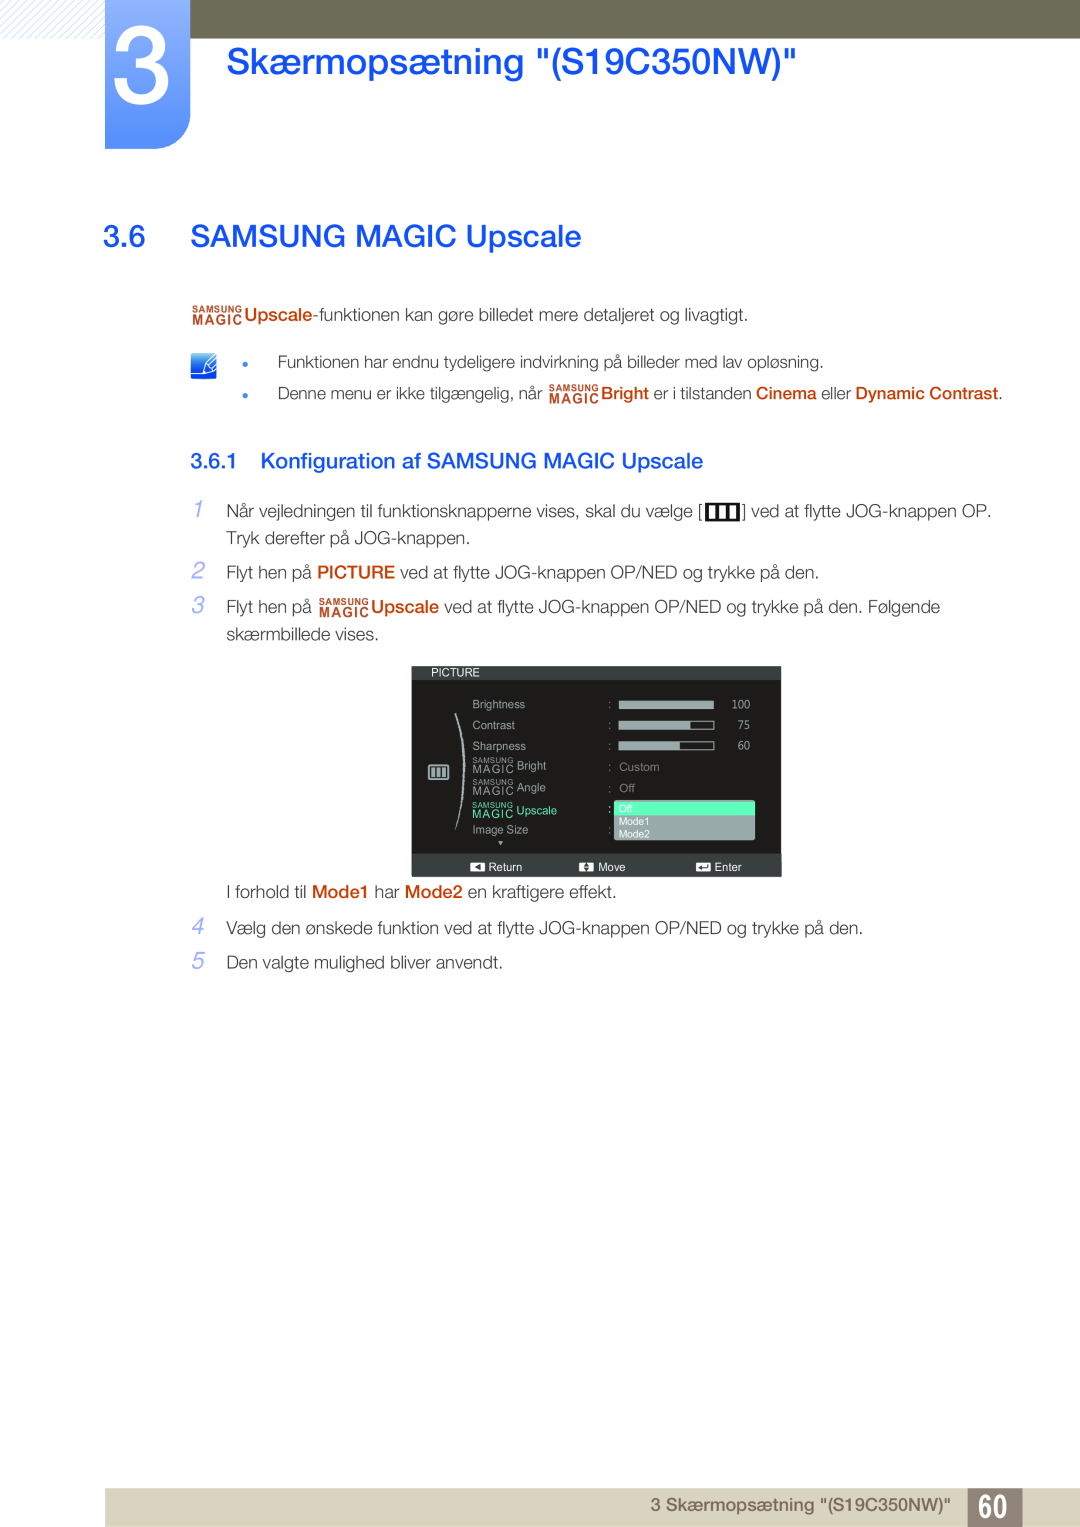 Samsung LS22C350HS/EN, LS24C350HS/EN, LS23C350HS/EN Konfiguration af SAMSUNG MAGIC Upscale, 3 Skærmopsætning S19C350NW 